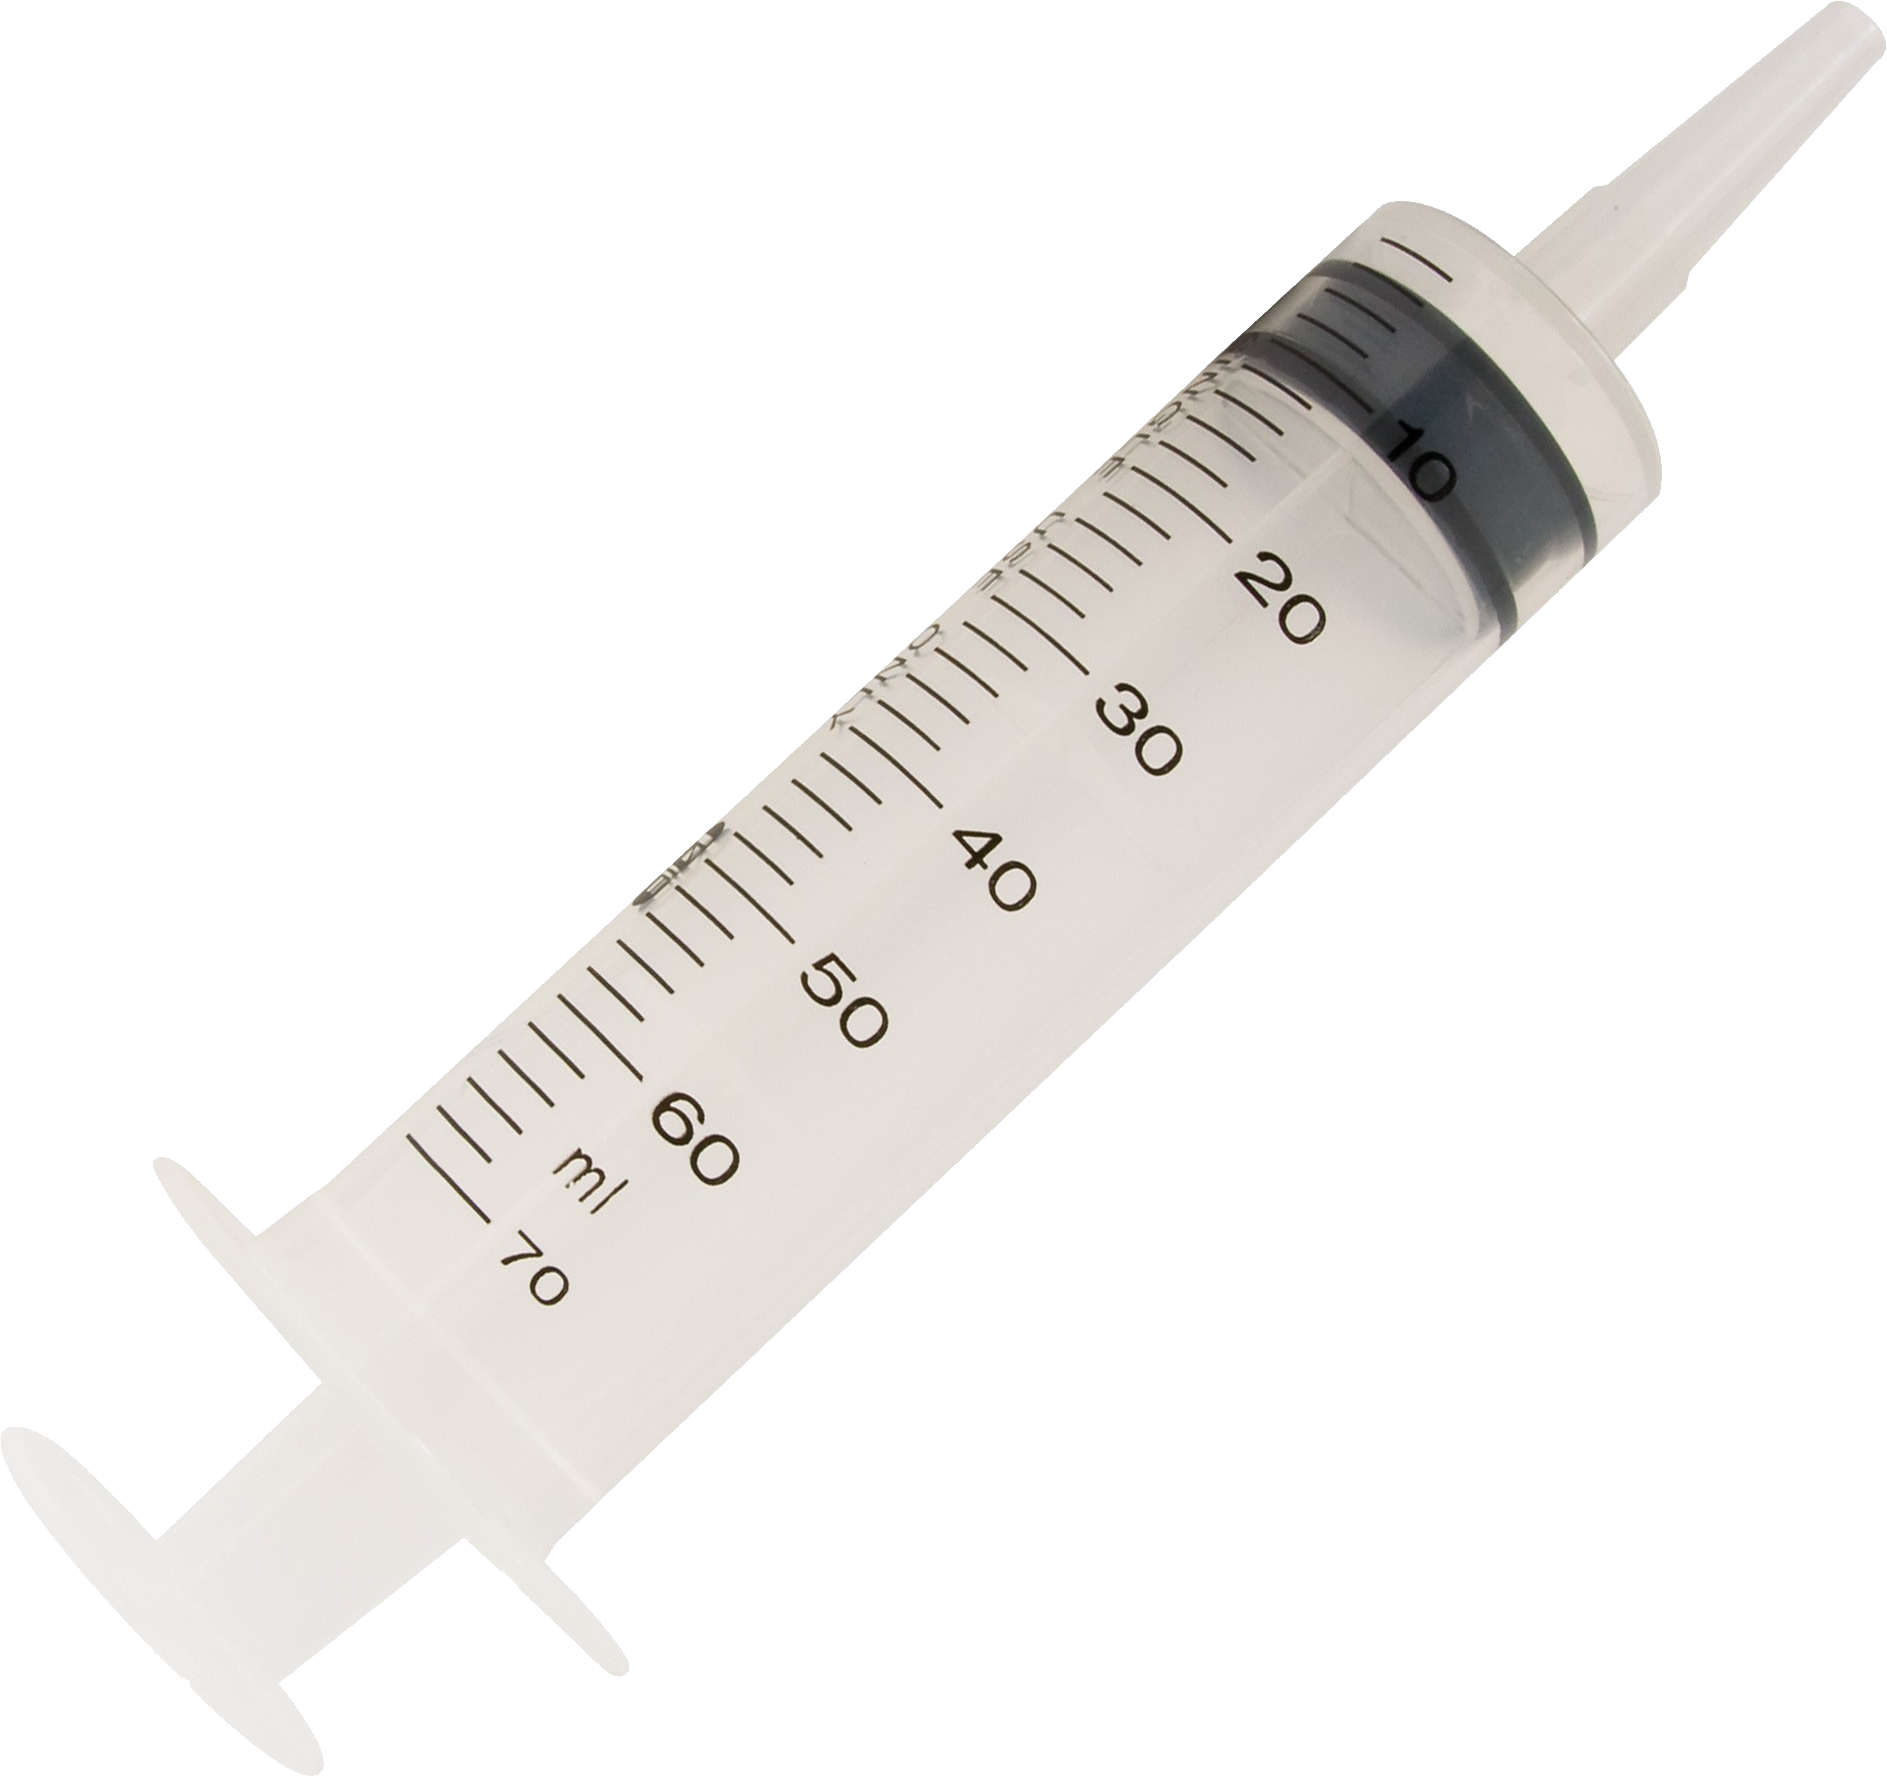 Syringe Png Transparent Image Download Size 1887x1777px